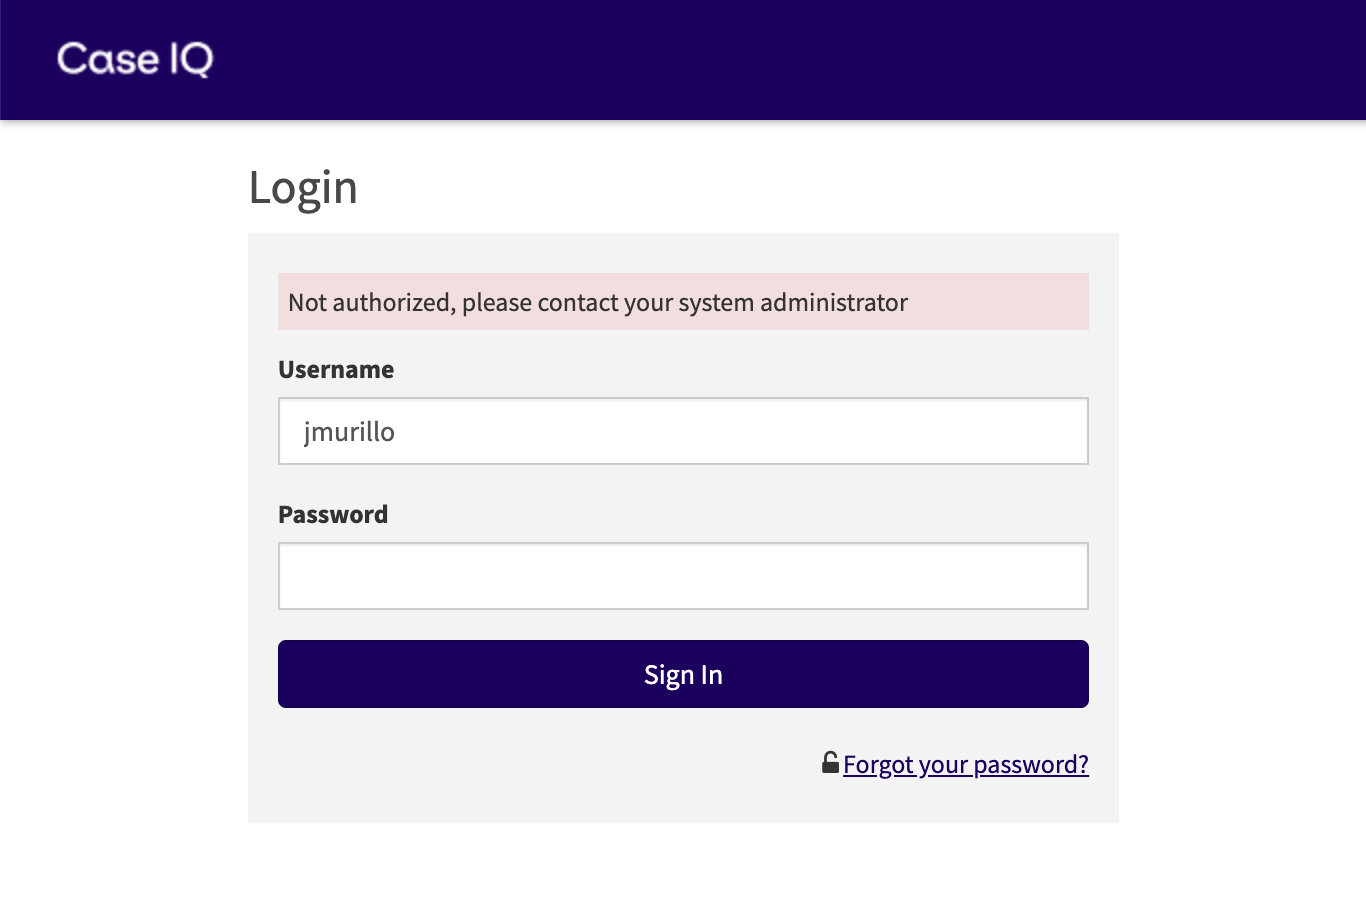 Page de connexion sur laquelle l'utilisateur a tenté de se connecter avec un compte désactivé. Le message indique "Non autorisé, veuillez contacter votre administrateur système".